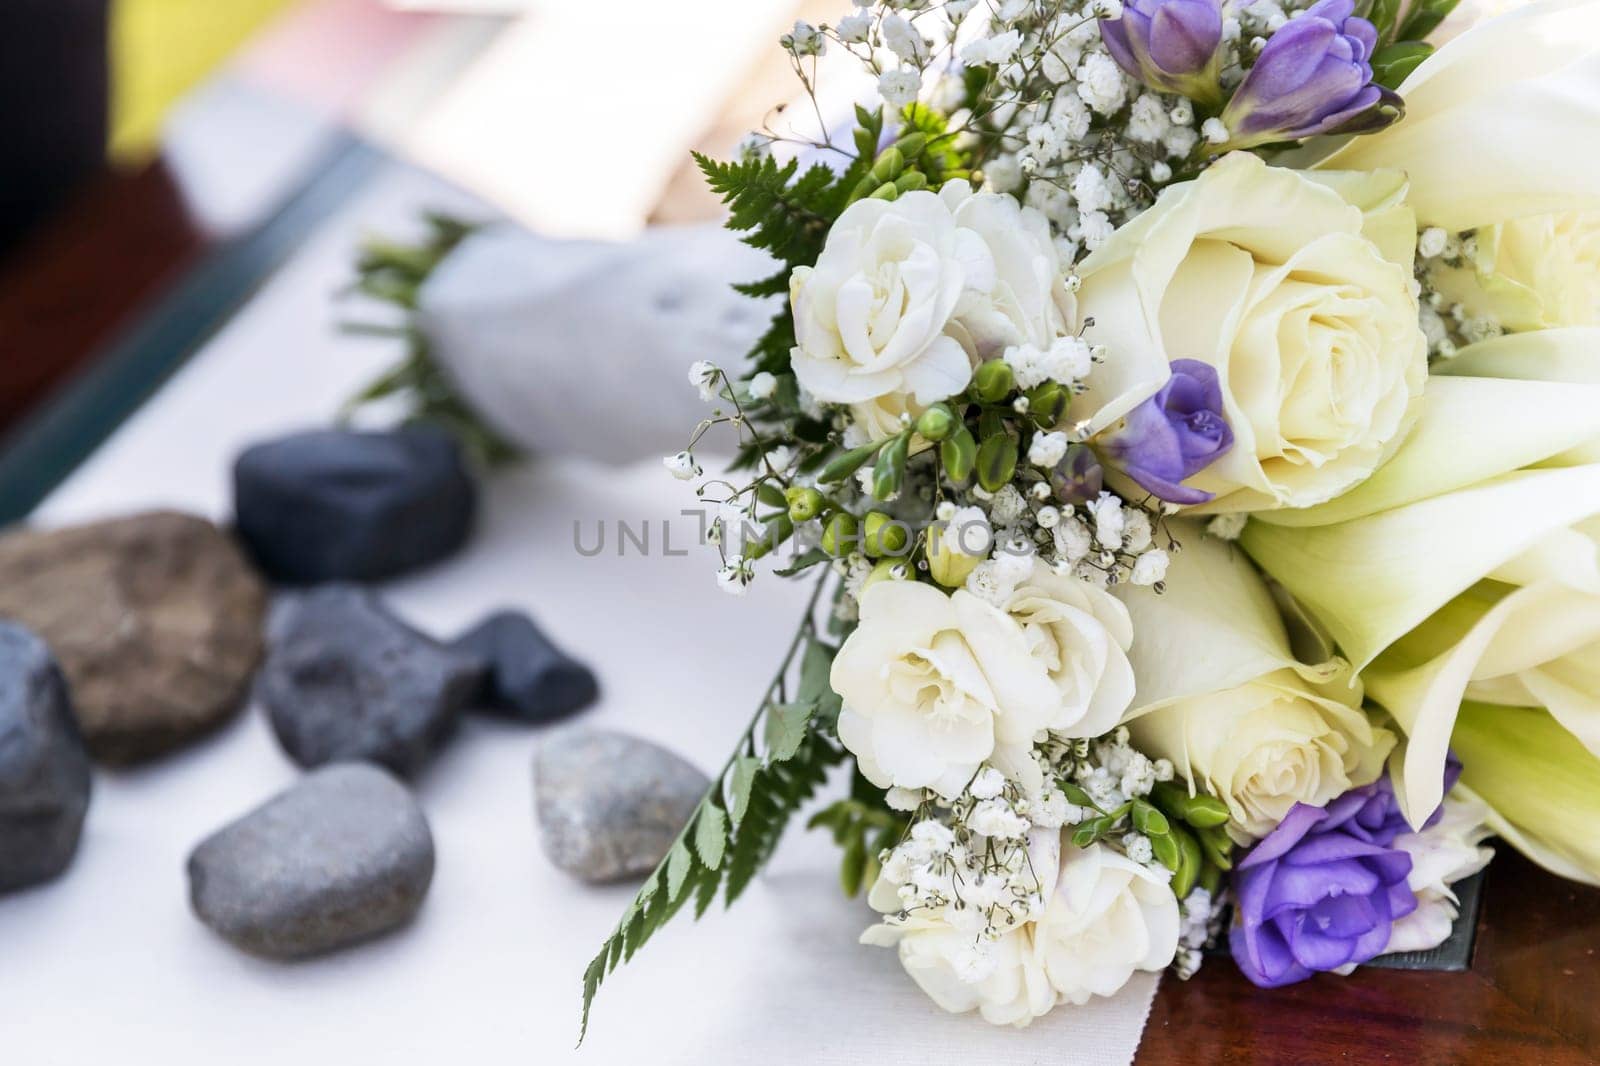 Flower bouquet of marriage by germanopoli